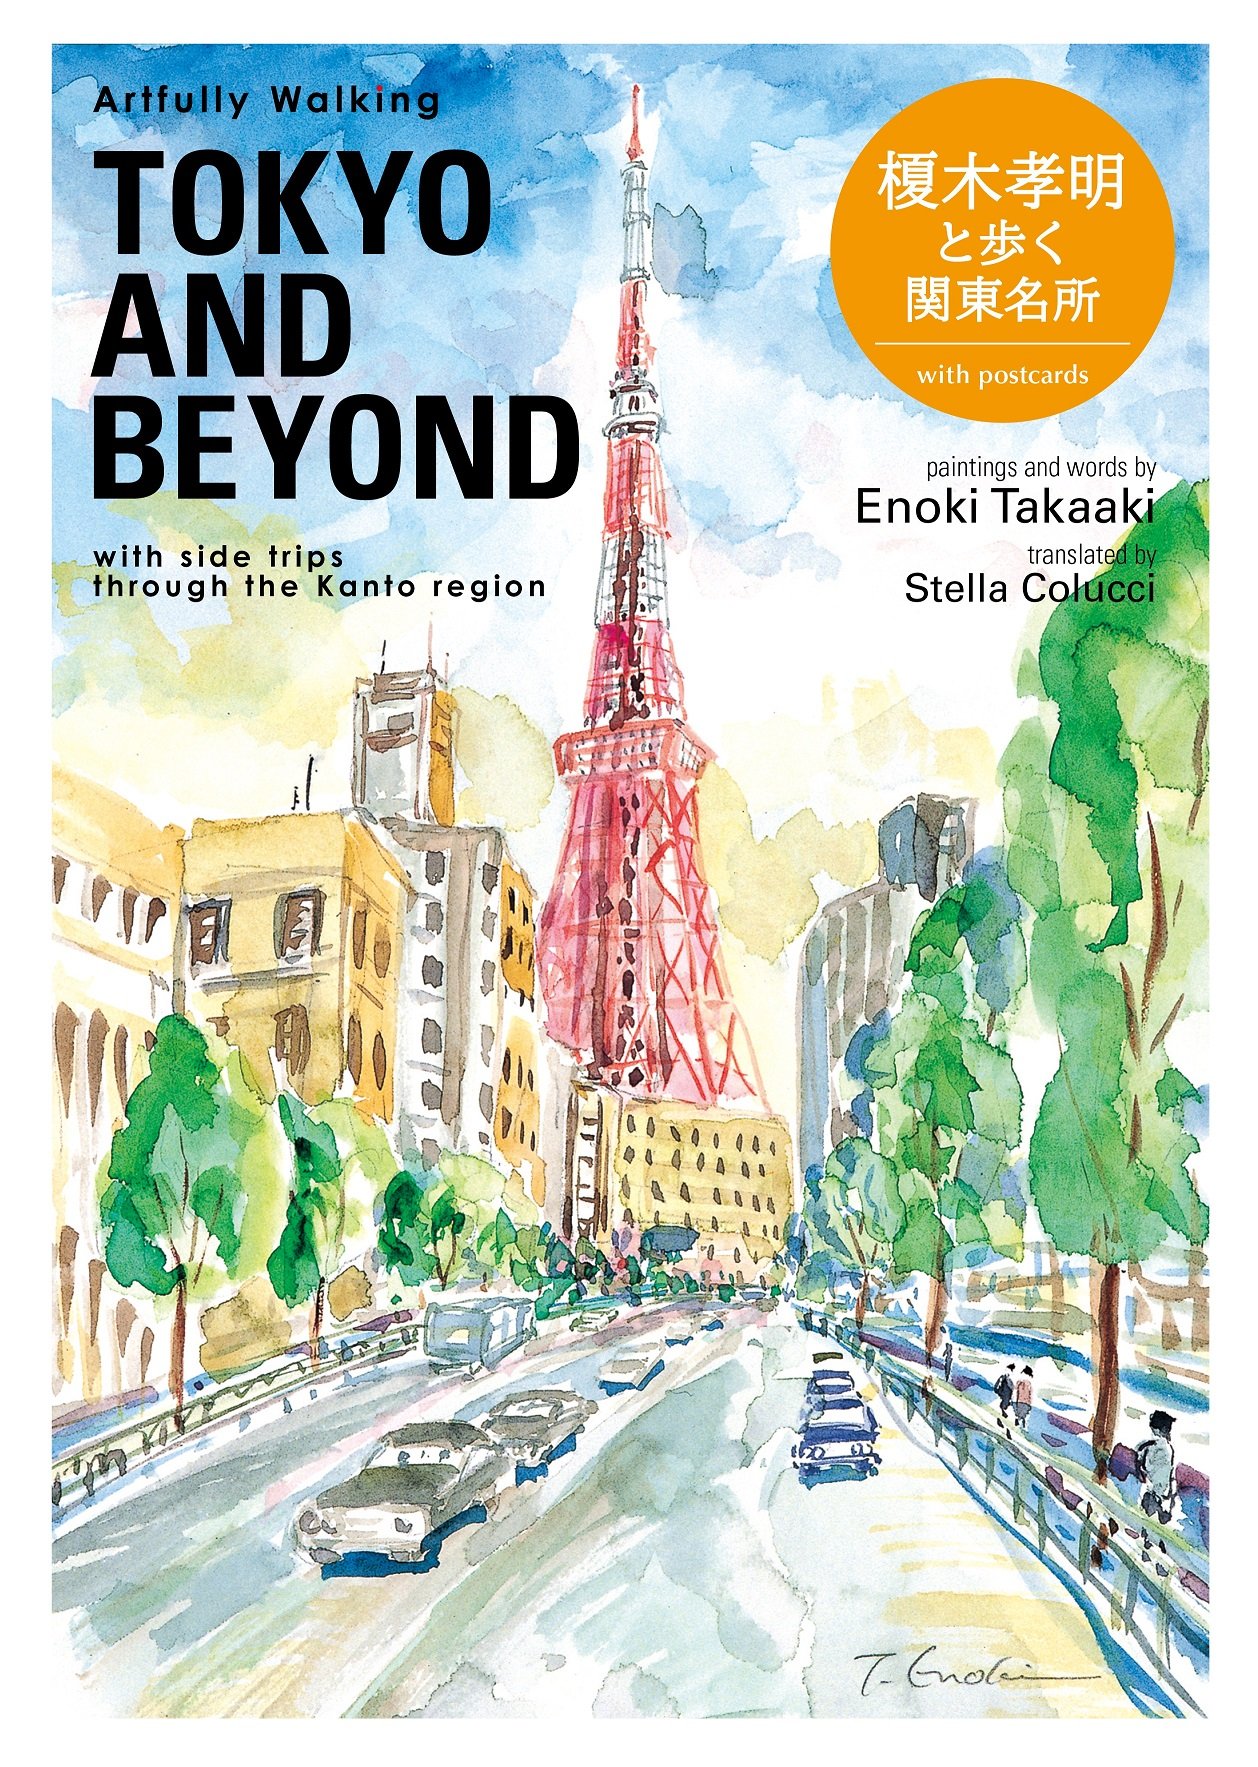 Artfully Walking TOKYO & BEYOND 中文冊子付版